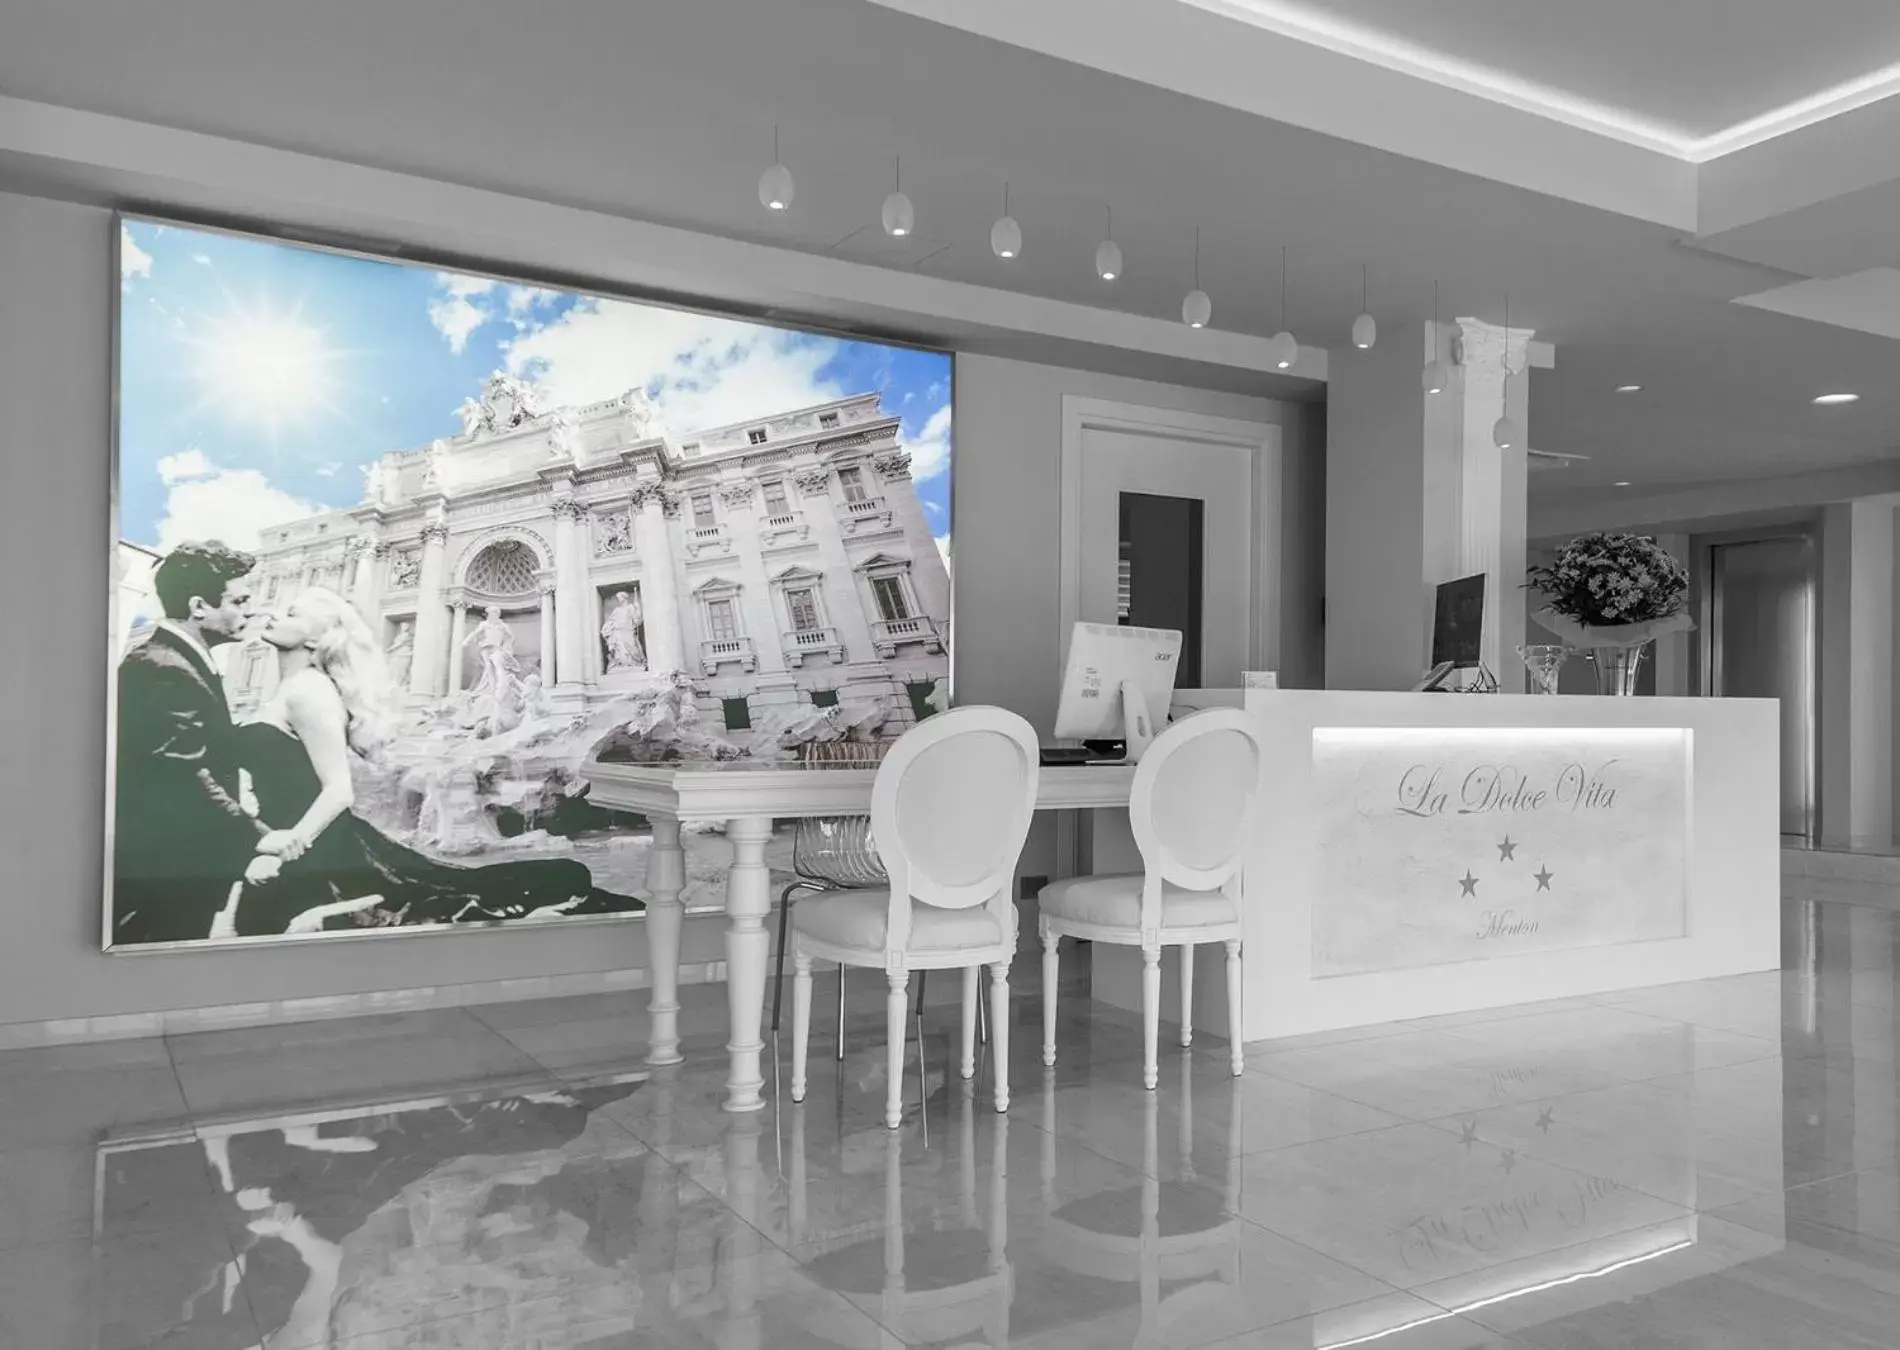 Lobby or reception in La Dolce Vita Hotel